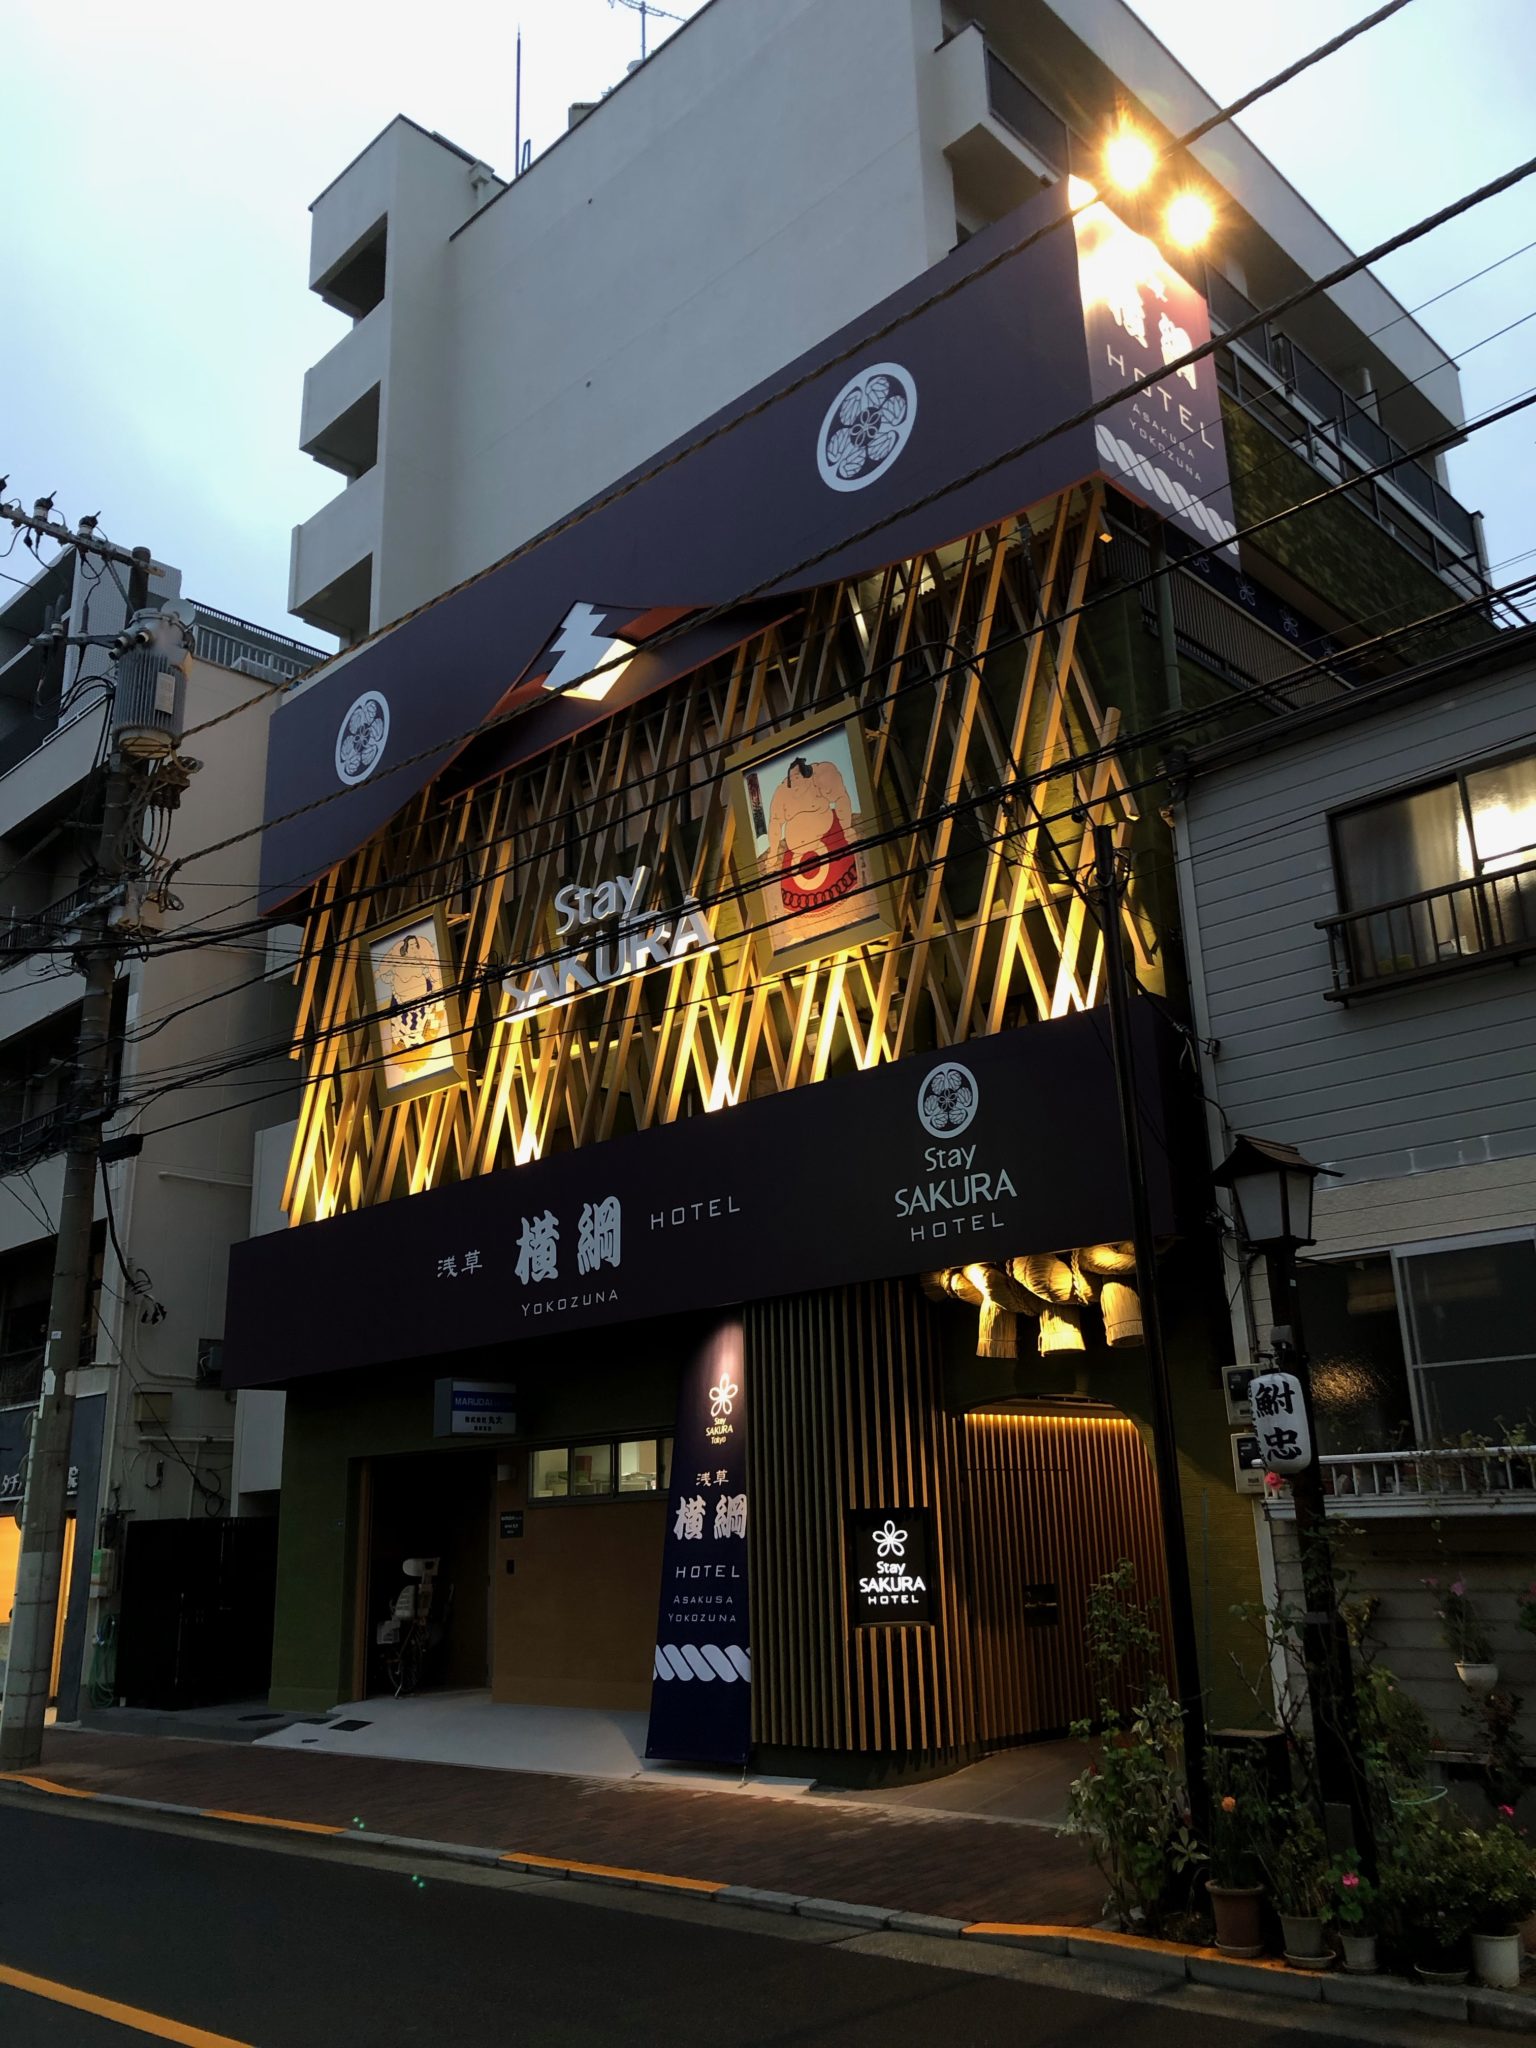 相撲テーマホテル「Stay SAKURA Tokyo 浅草横綱」 堂々グランドオープン!